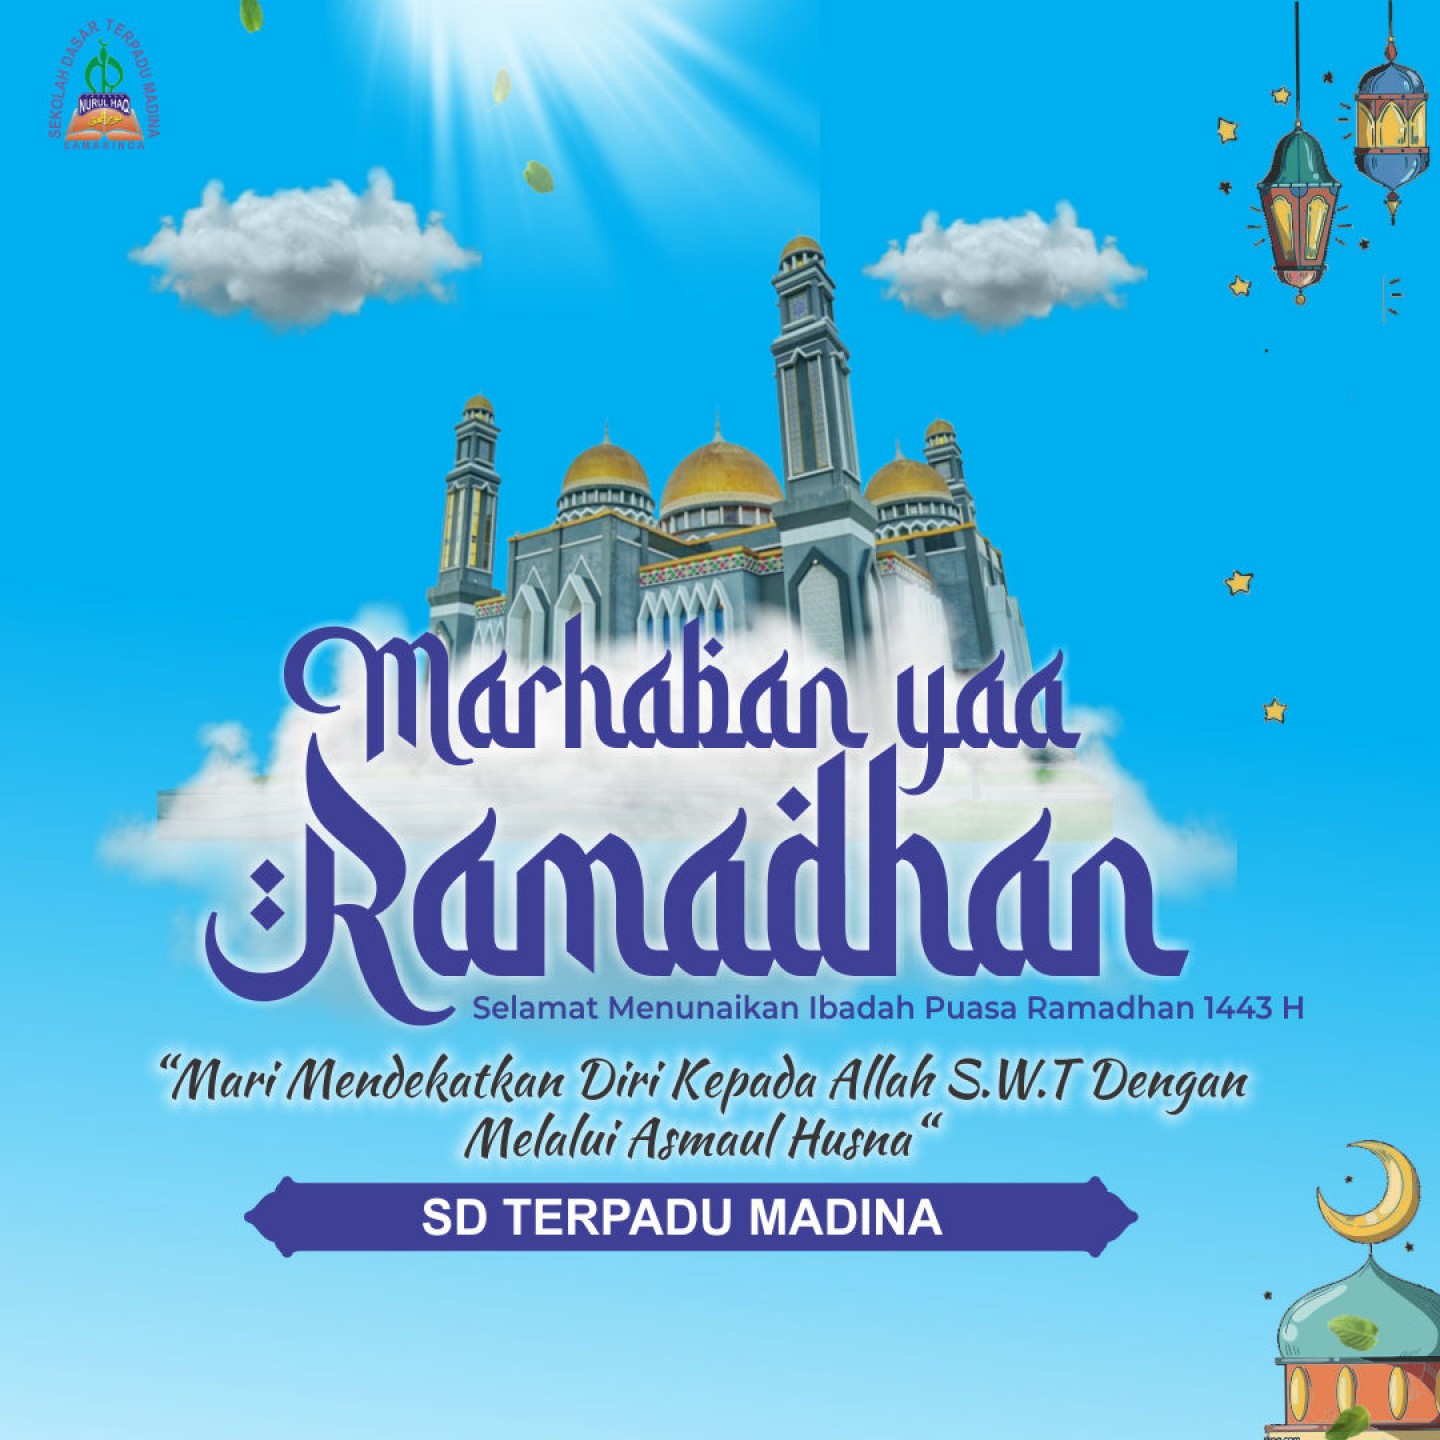 Segenap Keluarga Besar SD Terpadu Madina Samarinda Selamat Menjalankan Ibadah Puasa Ramadhan 1433H